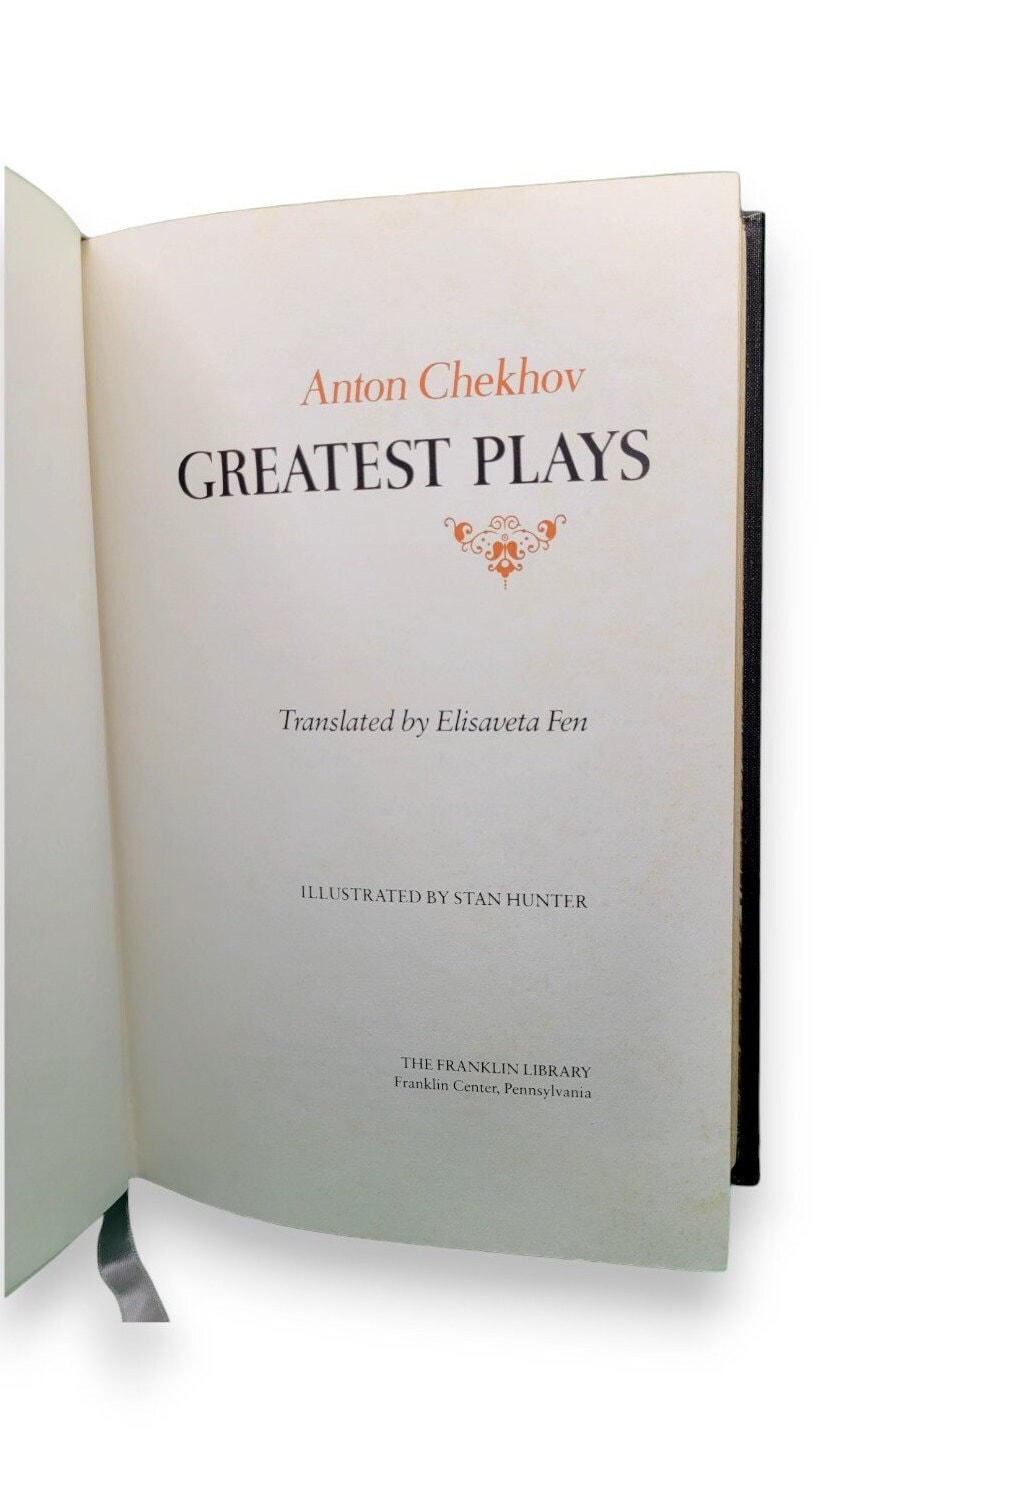 Greatest Plays by Anton Chekhov 1979